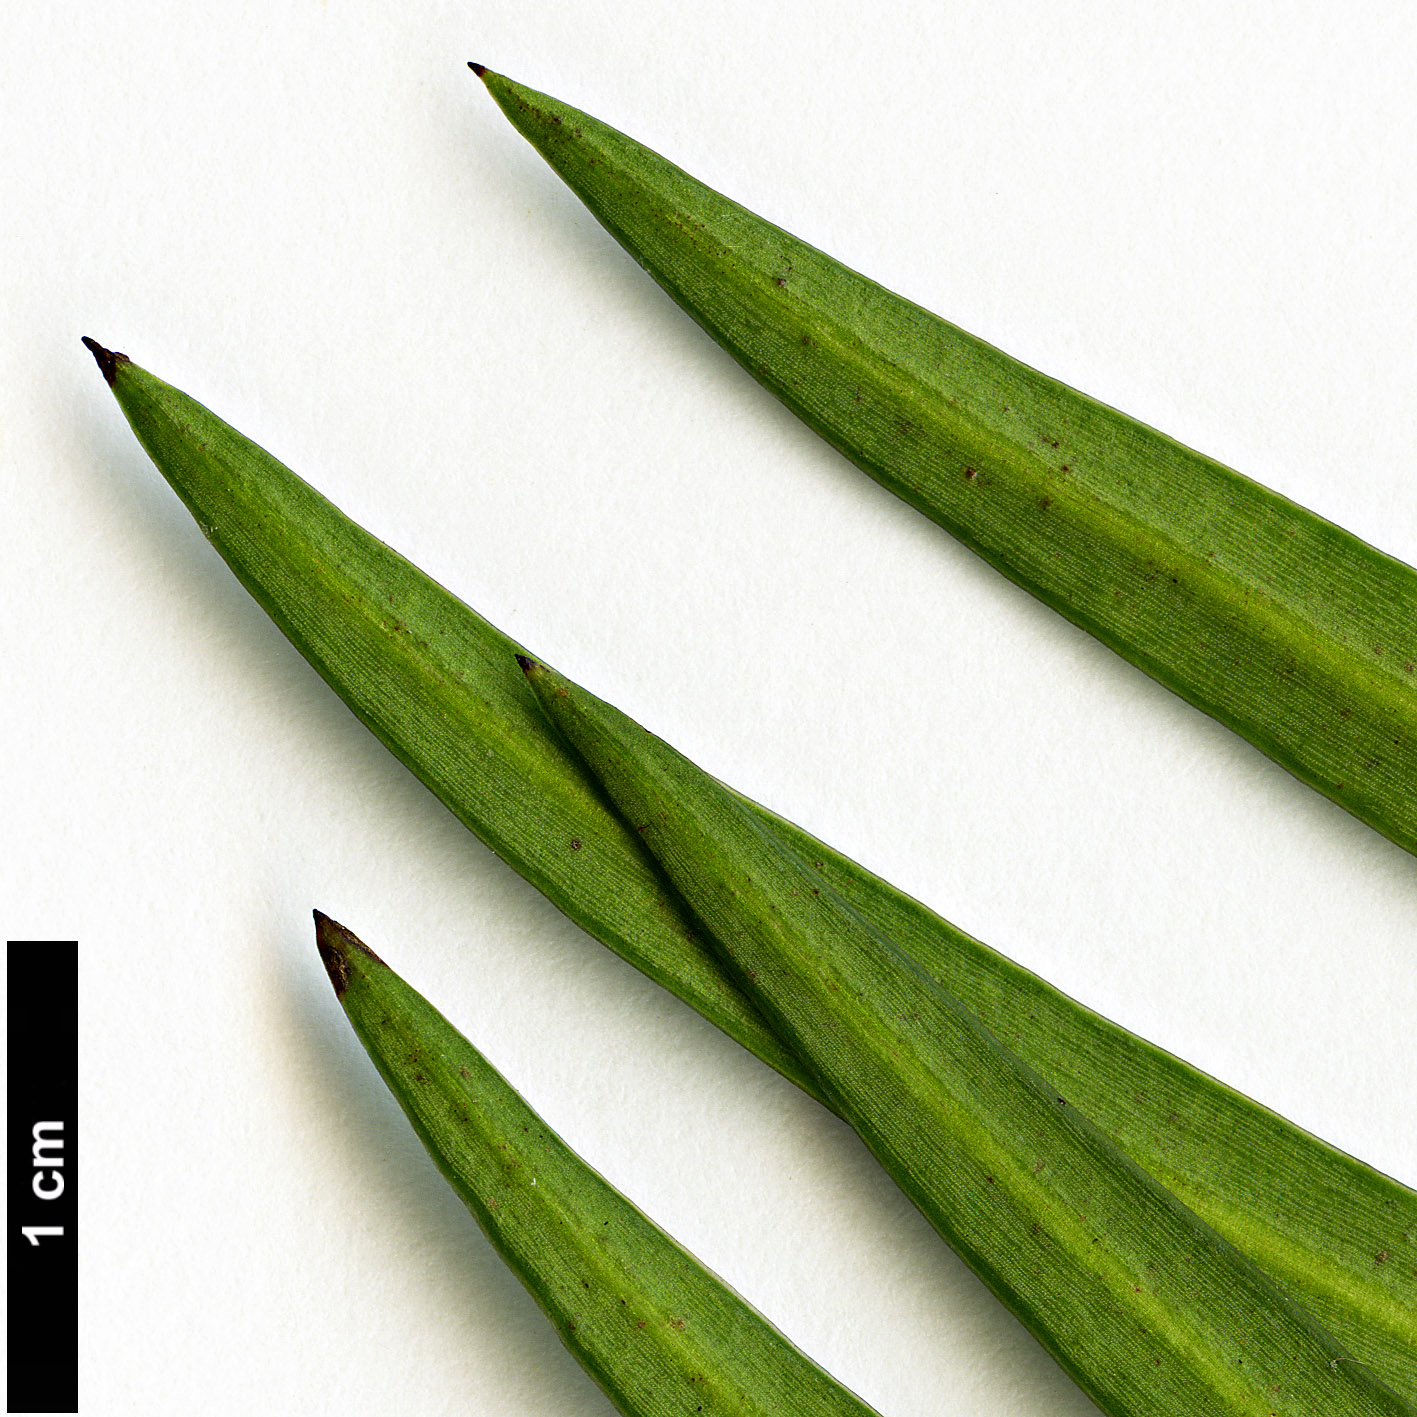 High resolution image: Family: Podocarpaceae - Genus: Podocarpus - Taxon: salignus